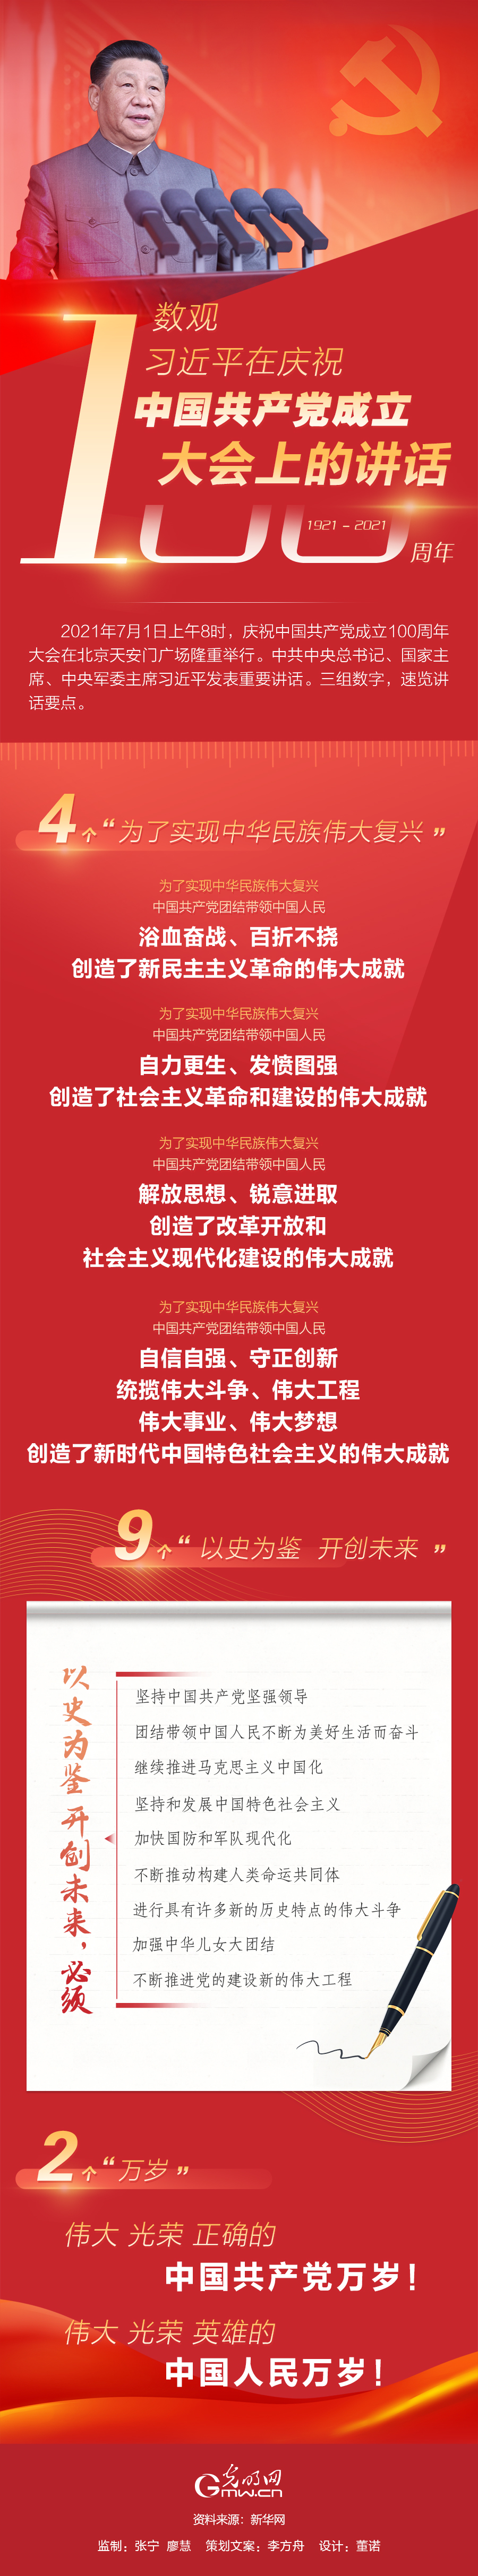 【图解】数观习近平在庆祝中国共产党成立100周年大会上的讲话